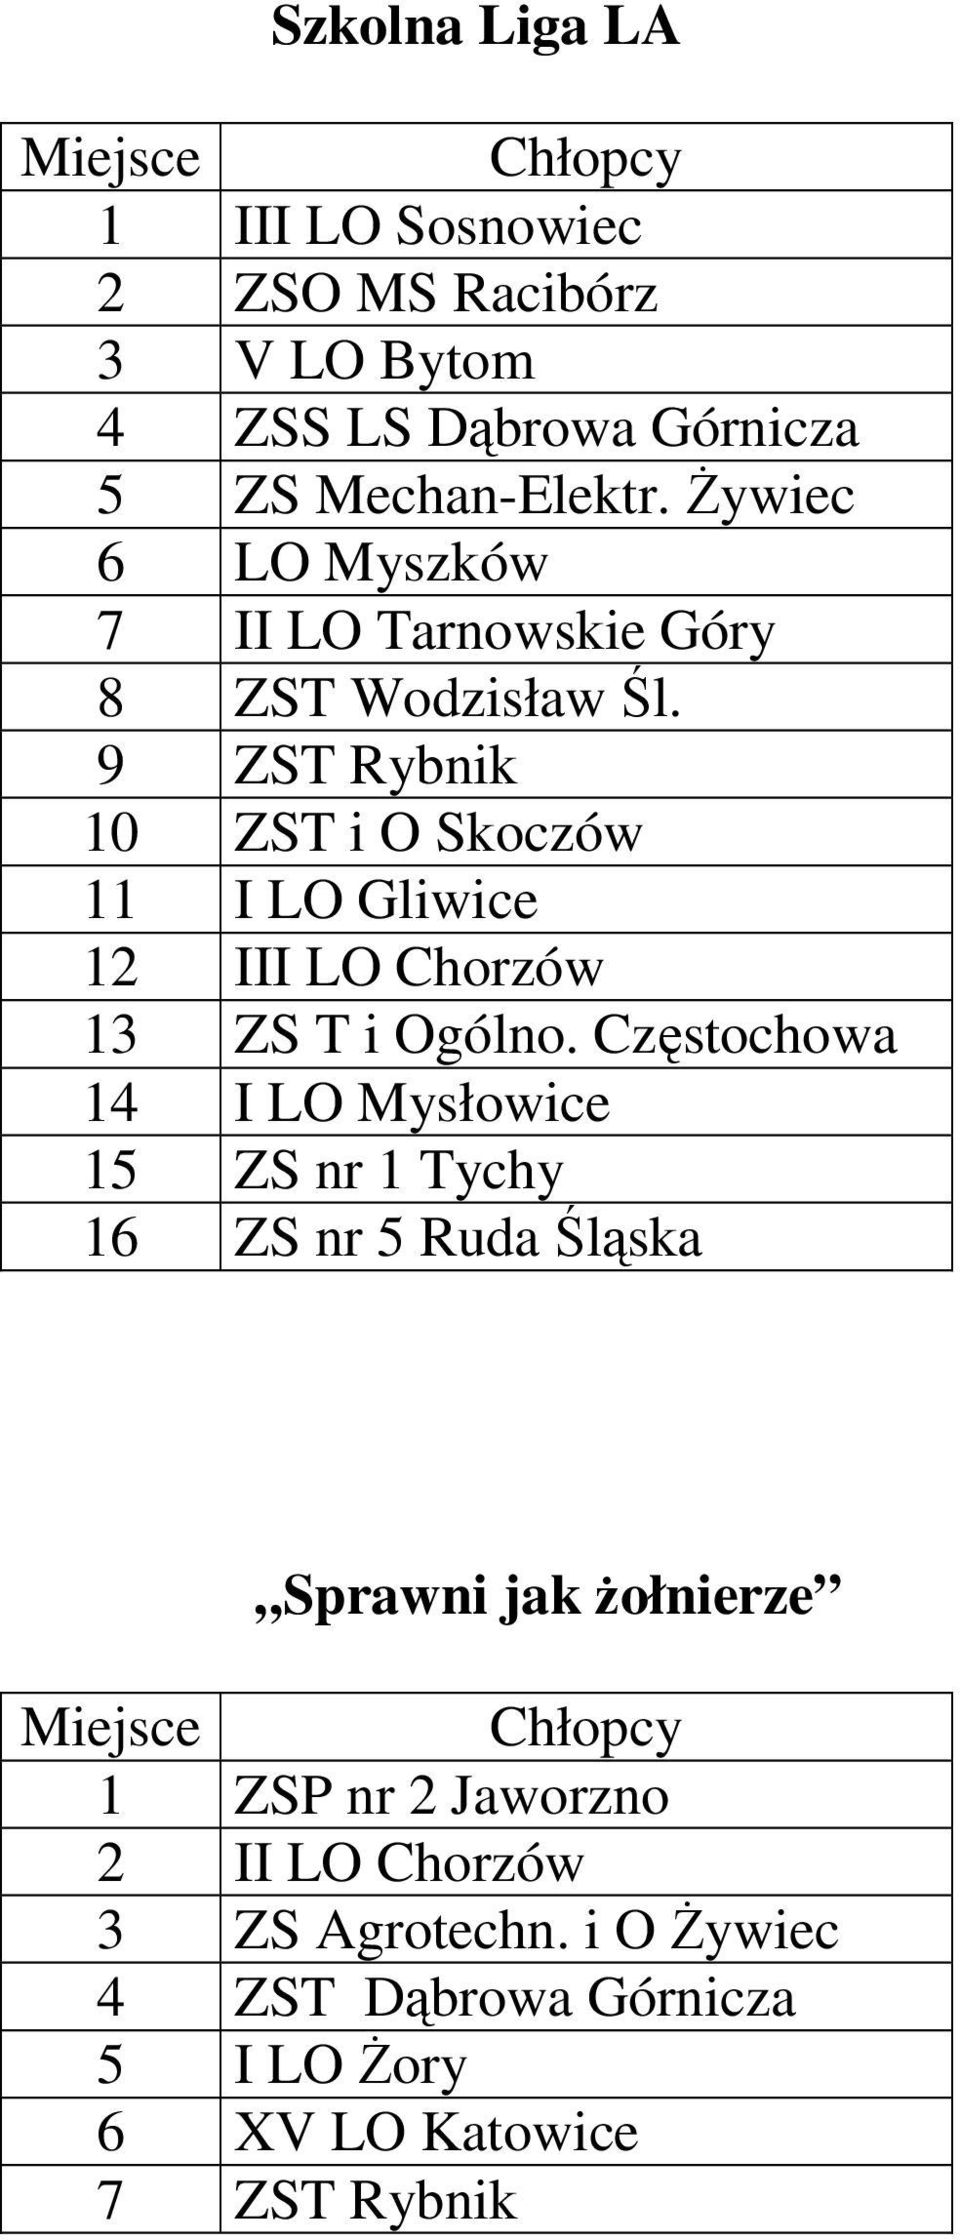 9 ZST Rybnik 10 ZST i O Skoczów 11 I LO Gliwice 12 III LO Chorzów 13 ZS T i Ogólno.